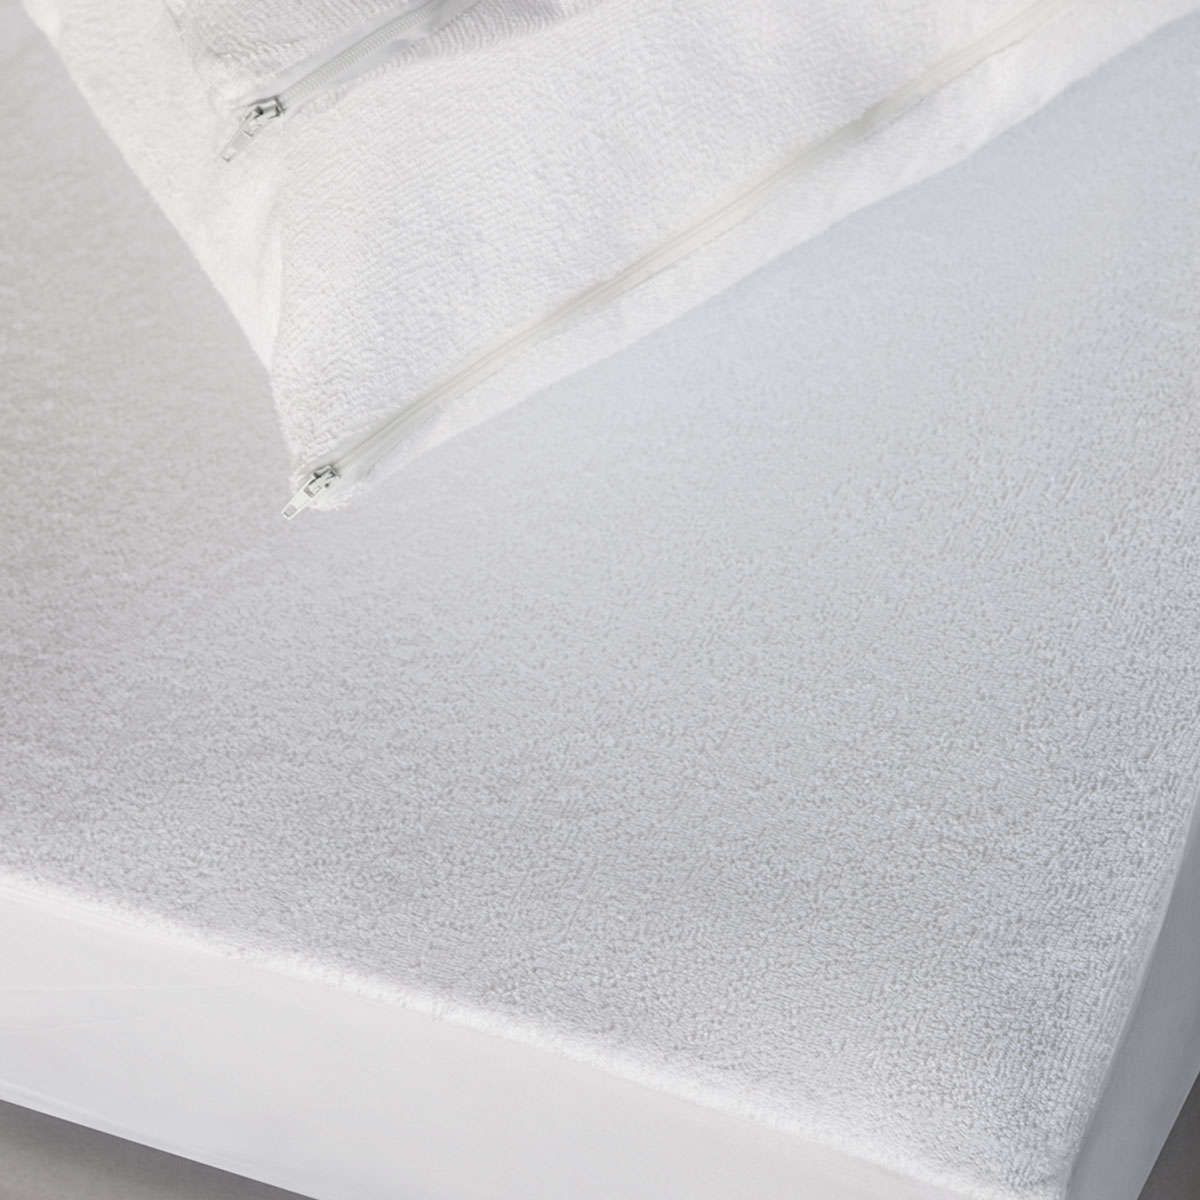 Αδιάβροχο προστατευτικό στρώματος με περιμετρική υφασμάτινη φούστα white melinen